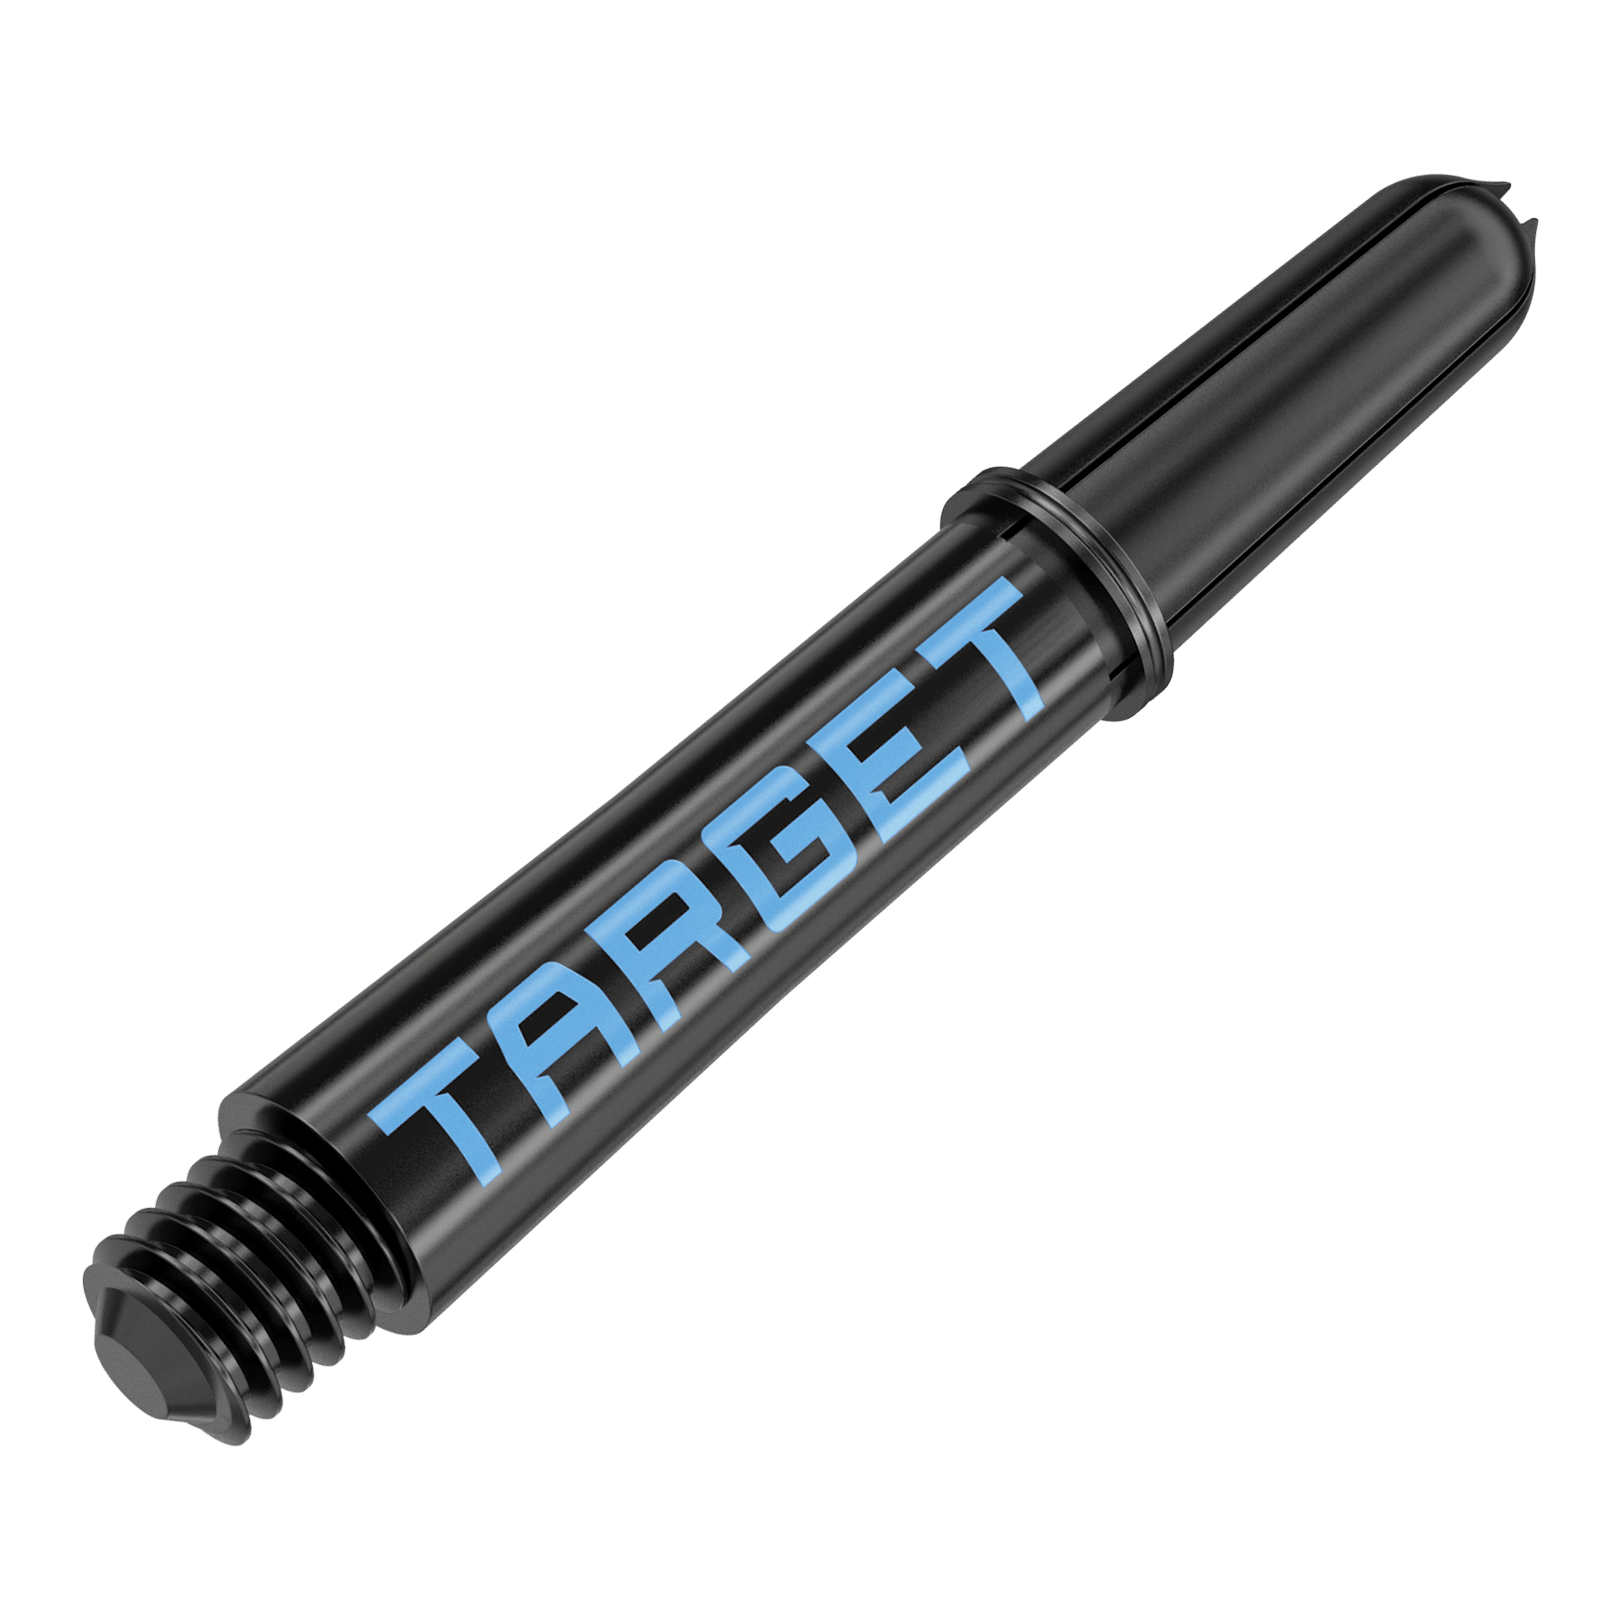 Tiges Target Pro Grip TAG - 3 jeux - Noir Bleu